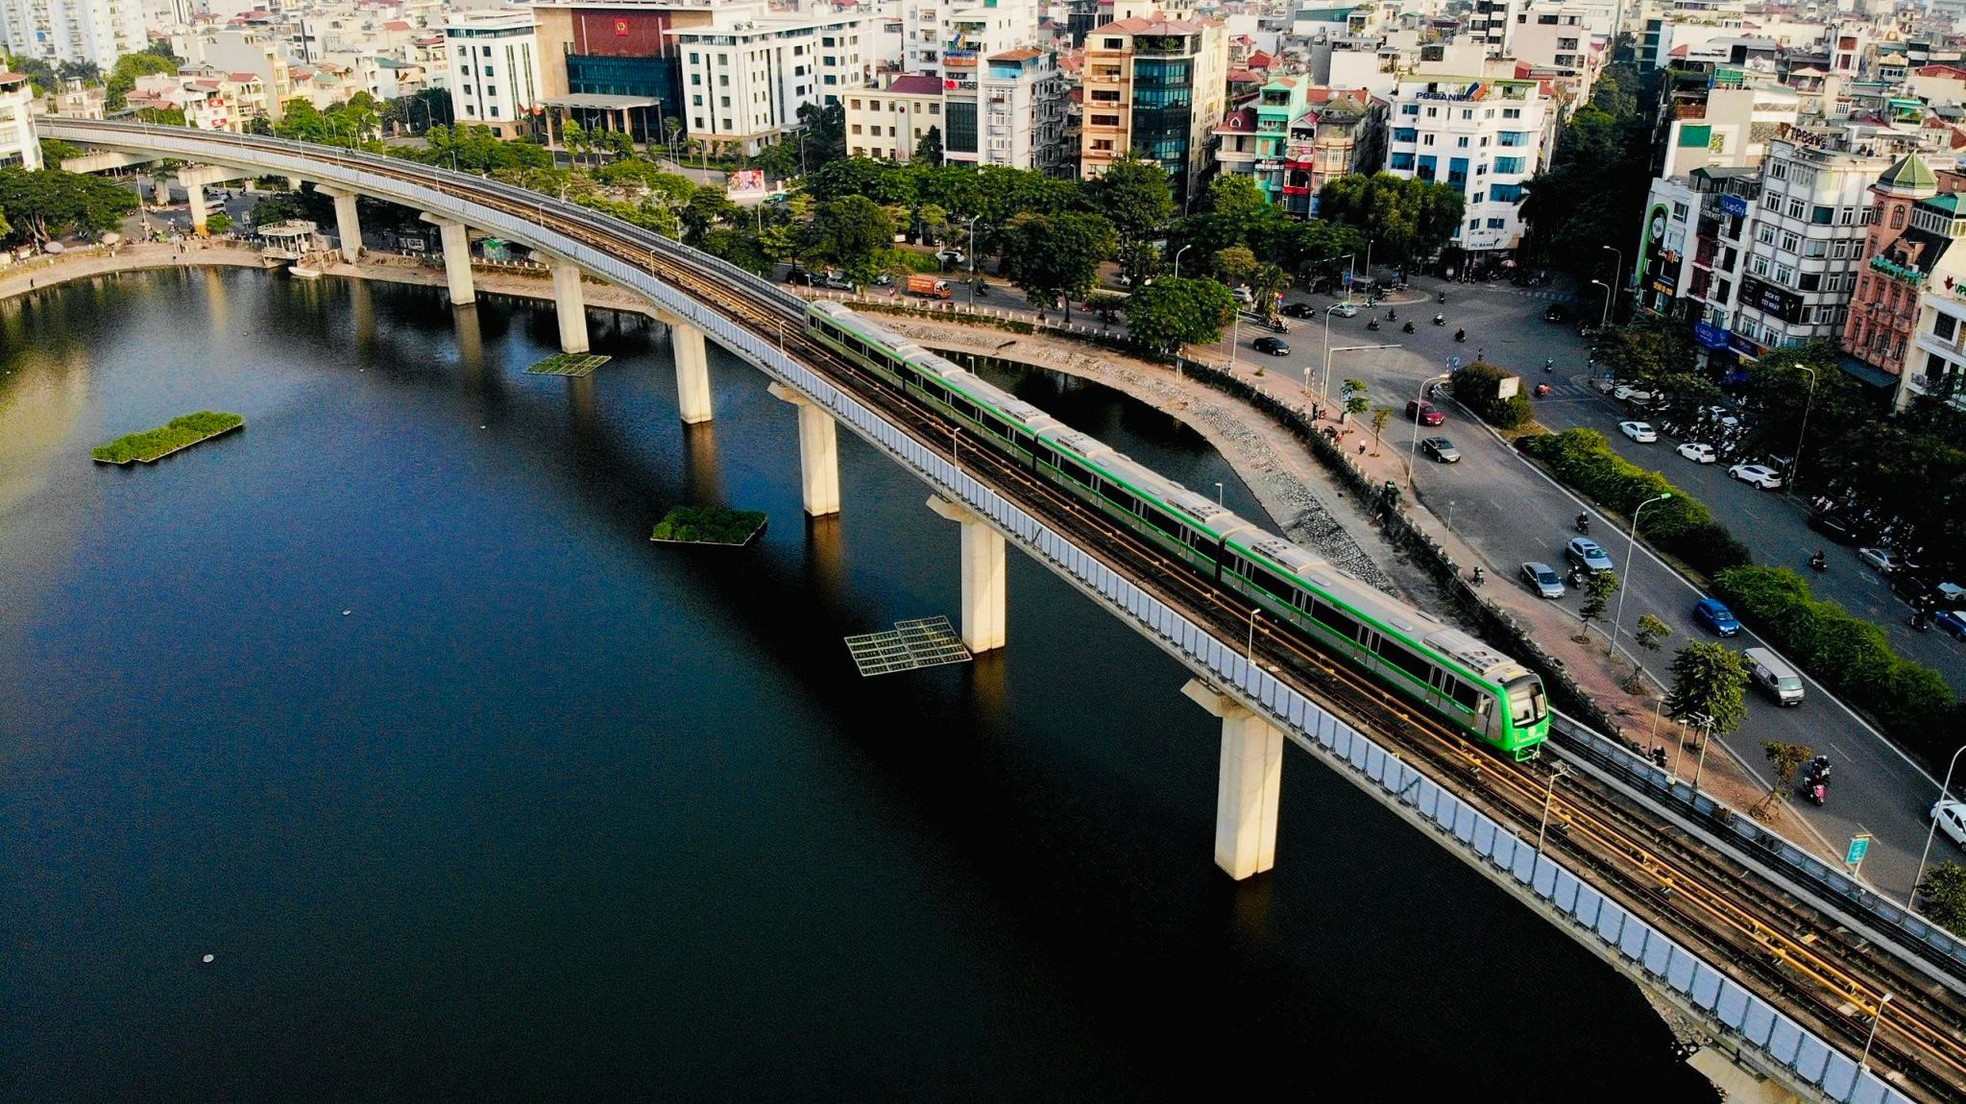 Hơn 32.000 lượt khách đi tàu điện Cát Linh - Hà Đông mỗi ngày ảnh 1